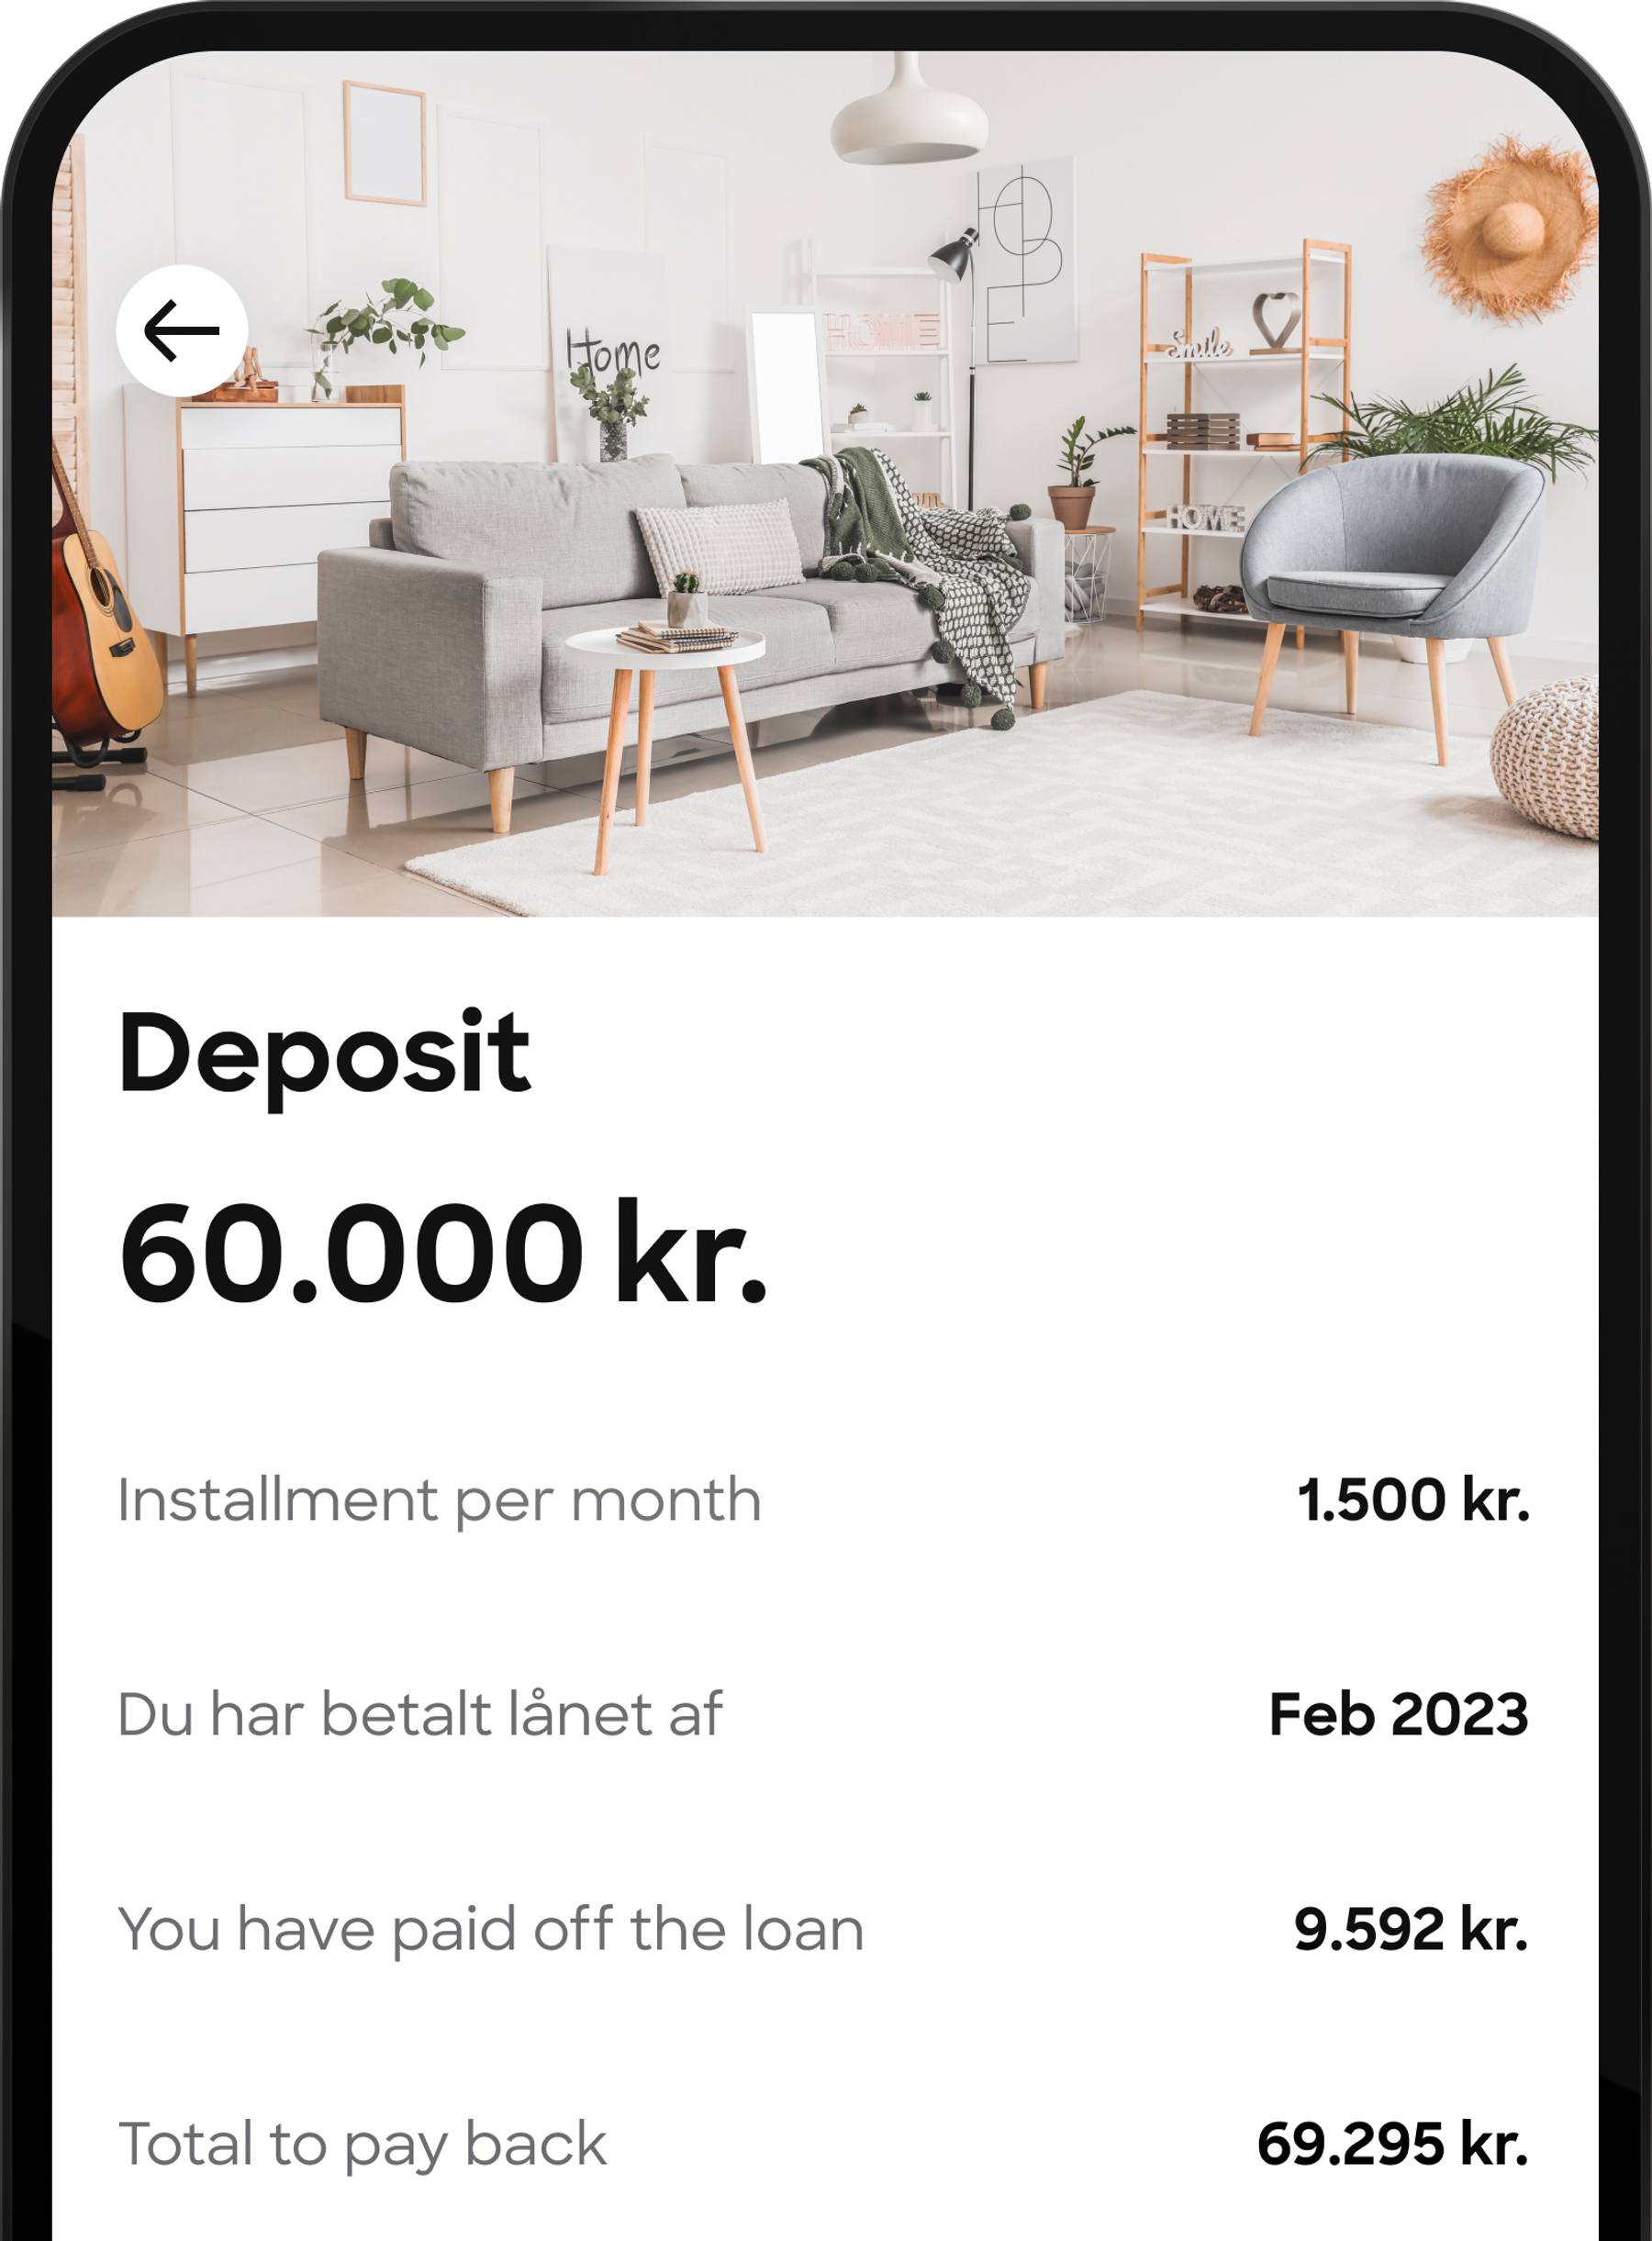 c-loans-deposit-en